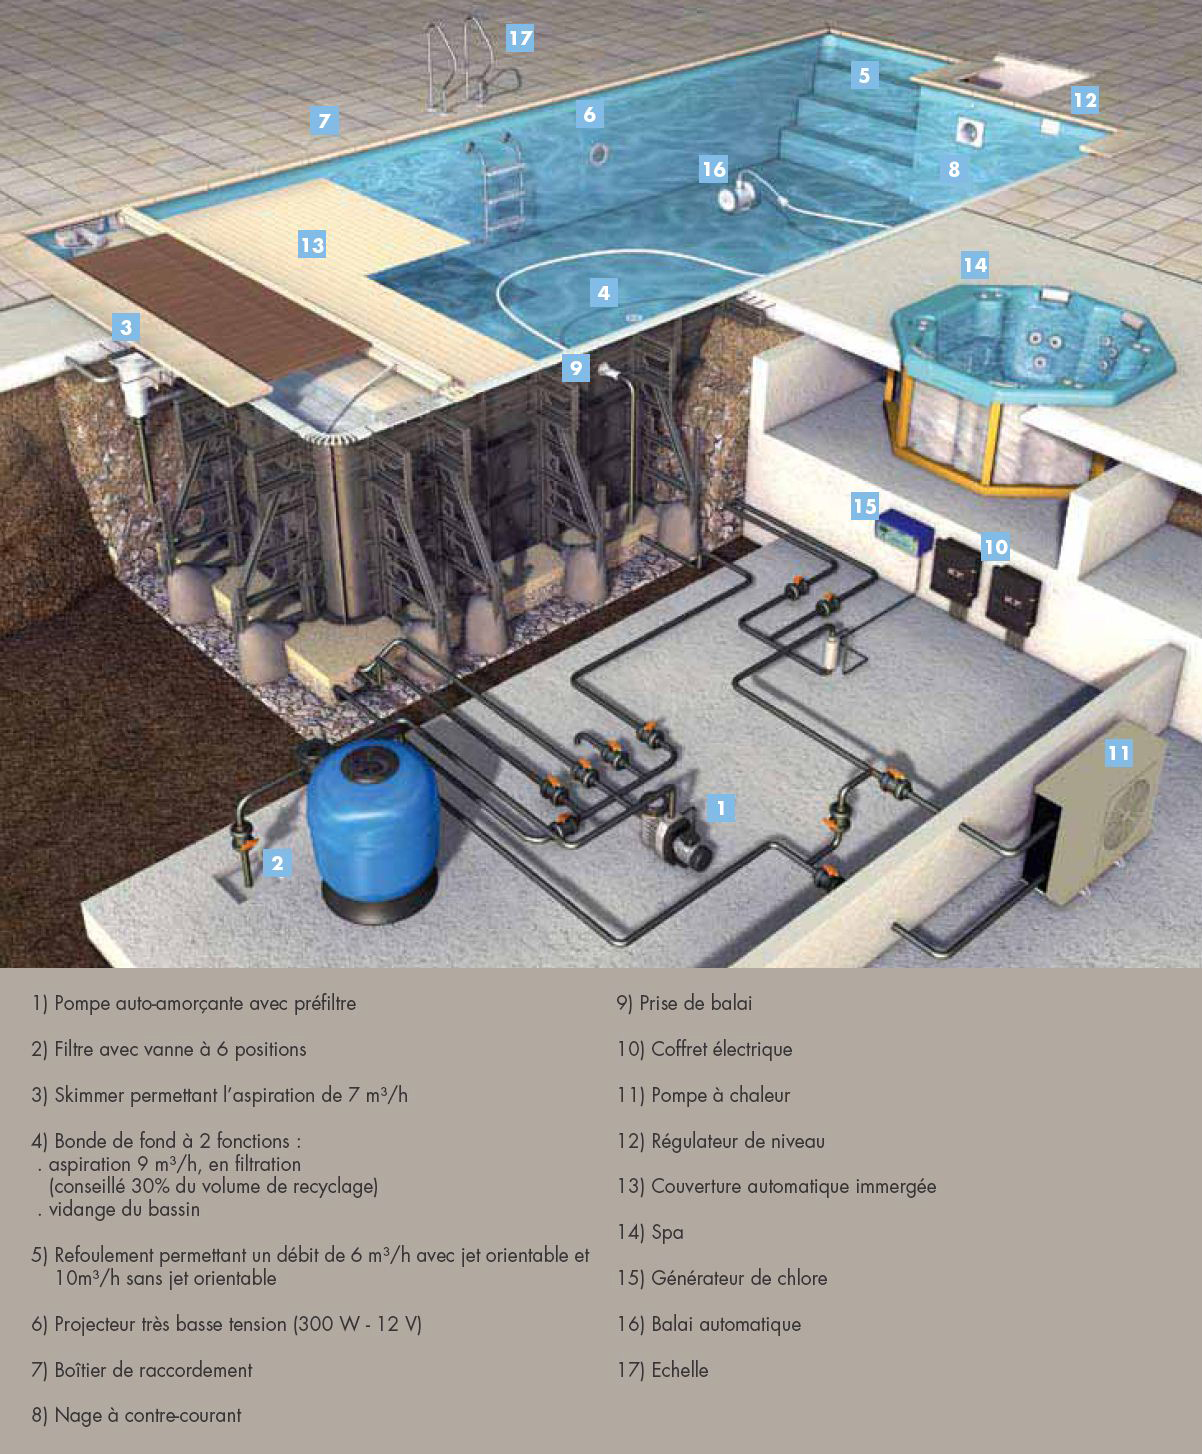 Circuit hydraulique d'une piscine